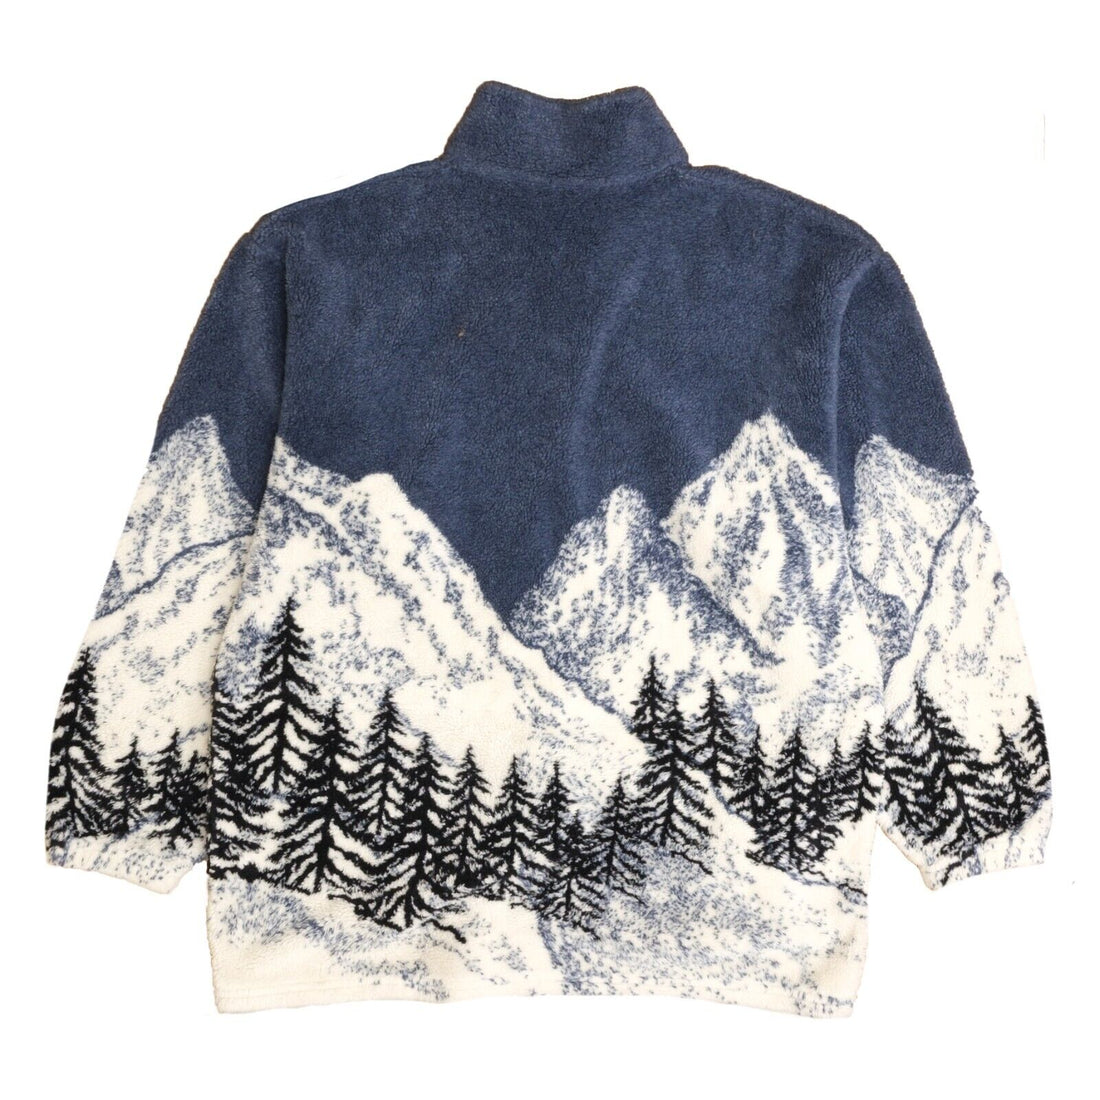 Vintage patterned winter fleece - Gem